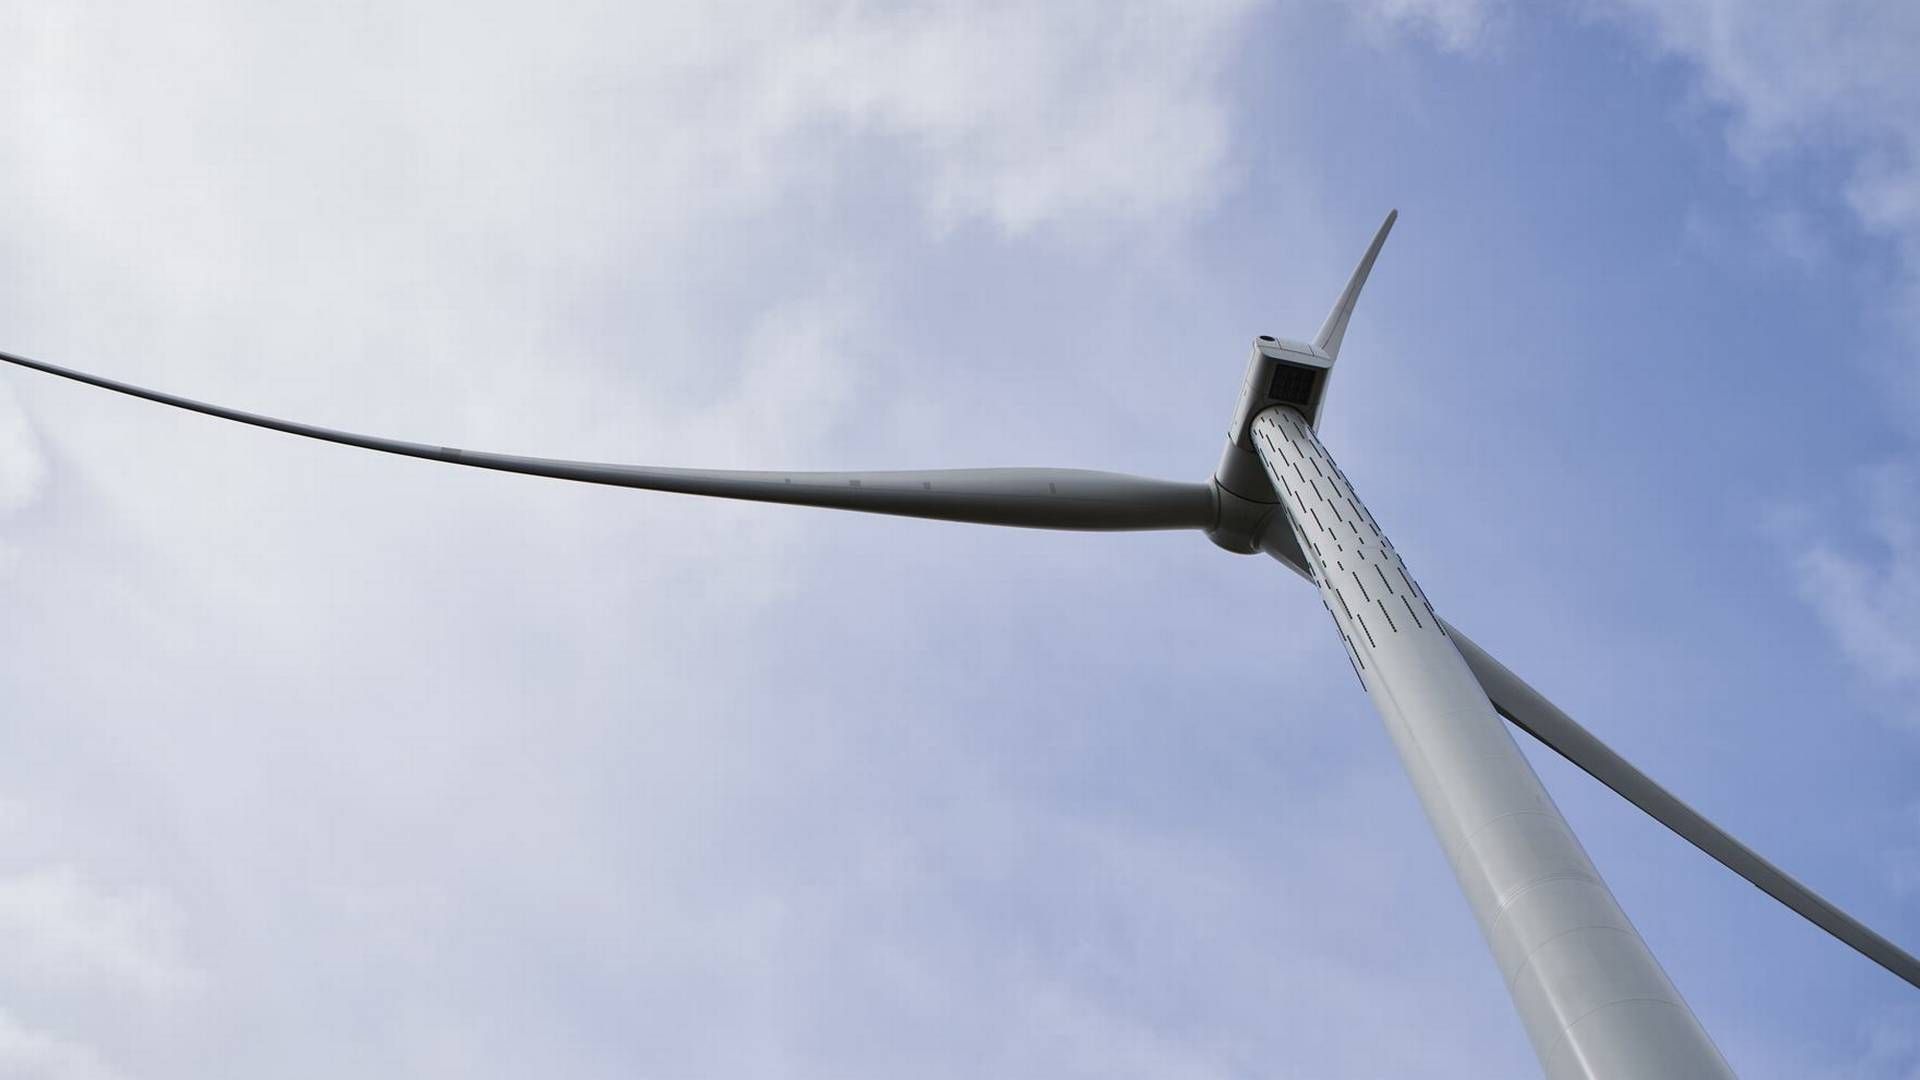 NEI FRA SELBU: Cloudberry-selskapet Skogvind legger nye vindkraftplaner i Selbu på vent. Illustrasjosnfoto. | Foto: NVE